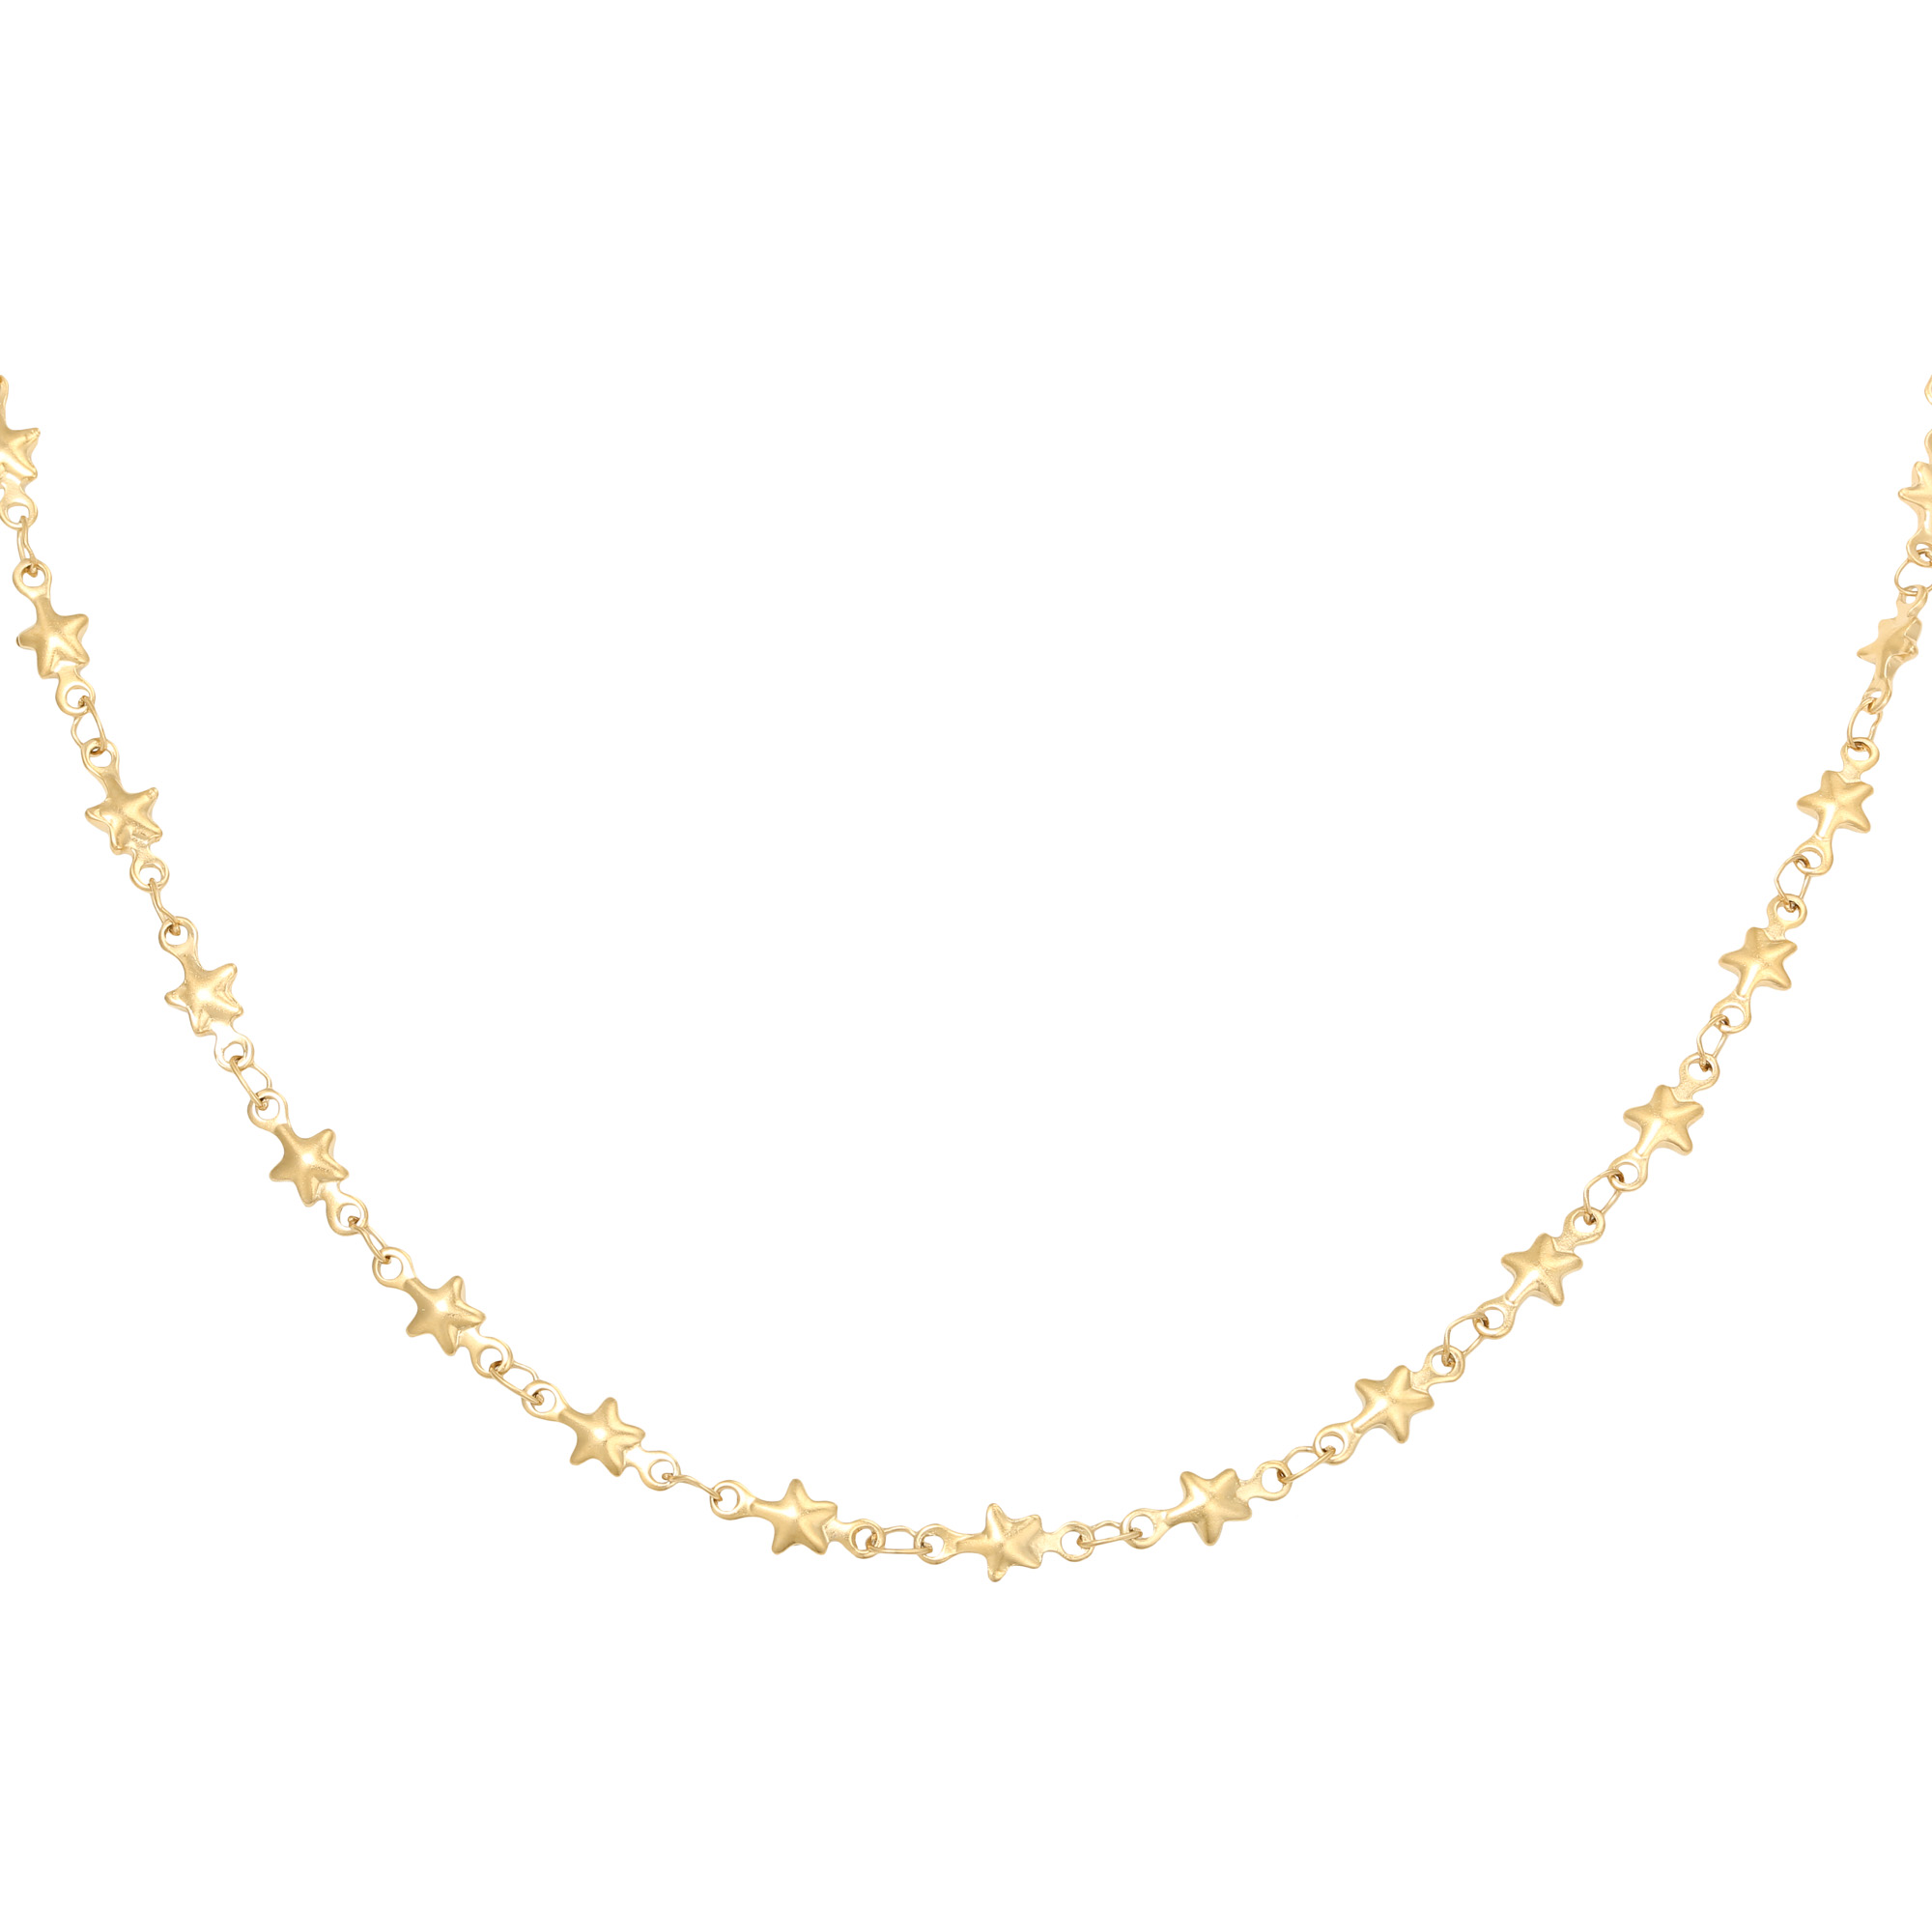 Halskette mit kleinen Sternen - Edelstahl - gold